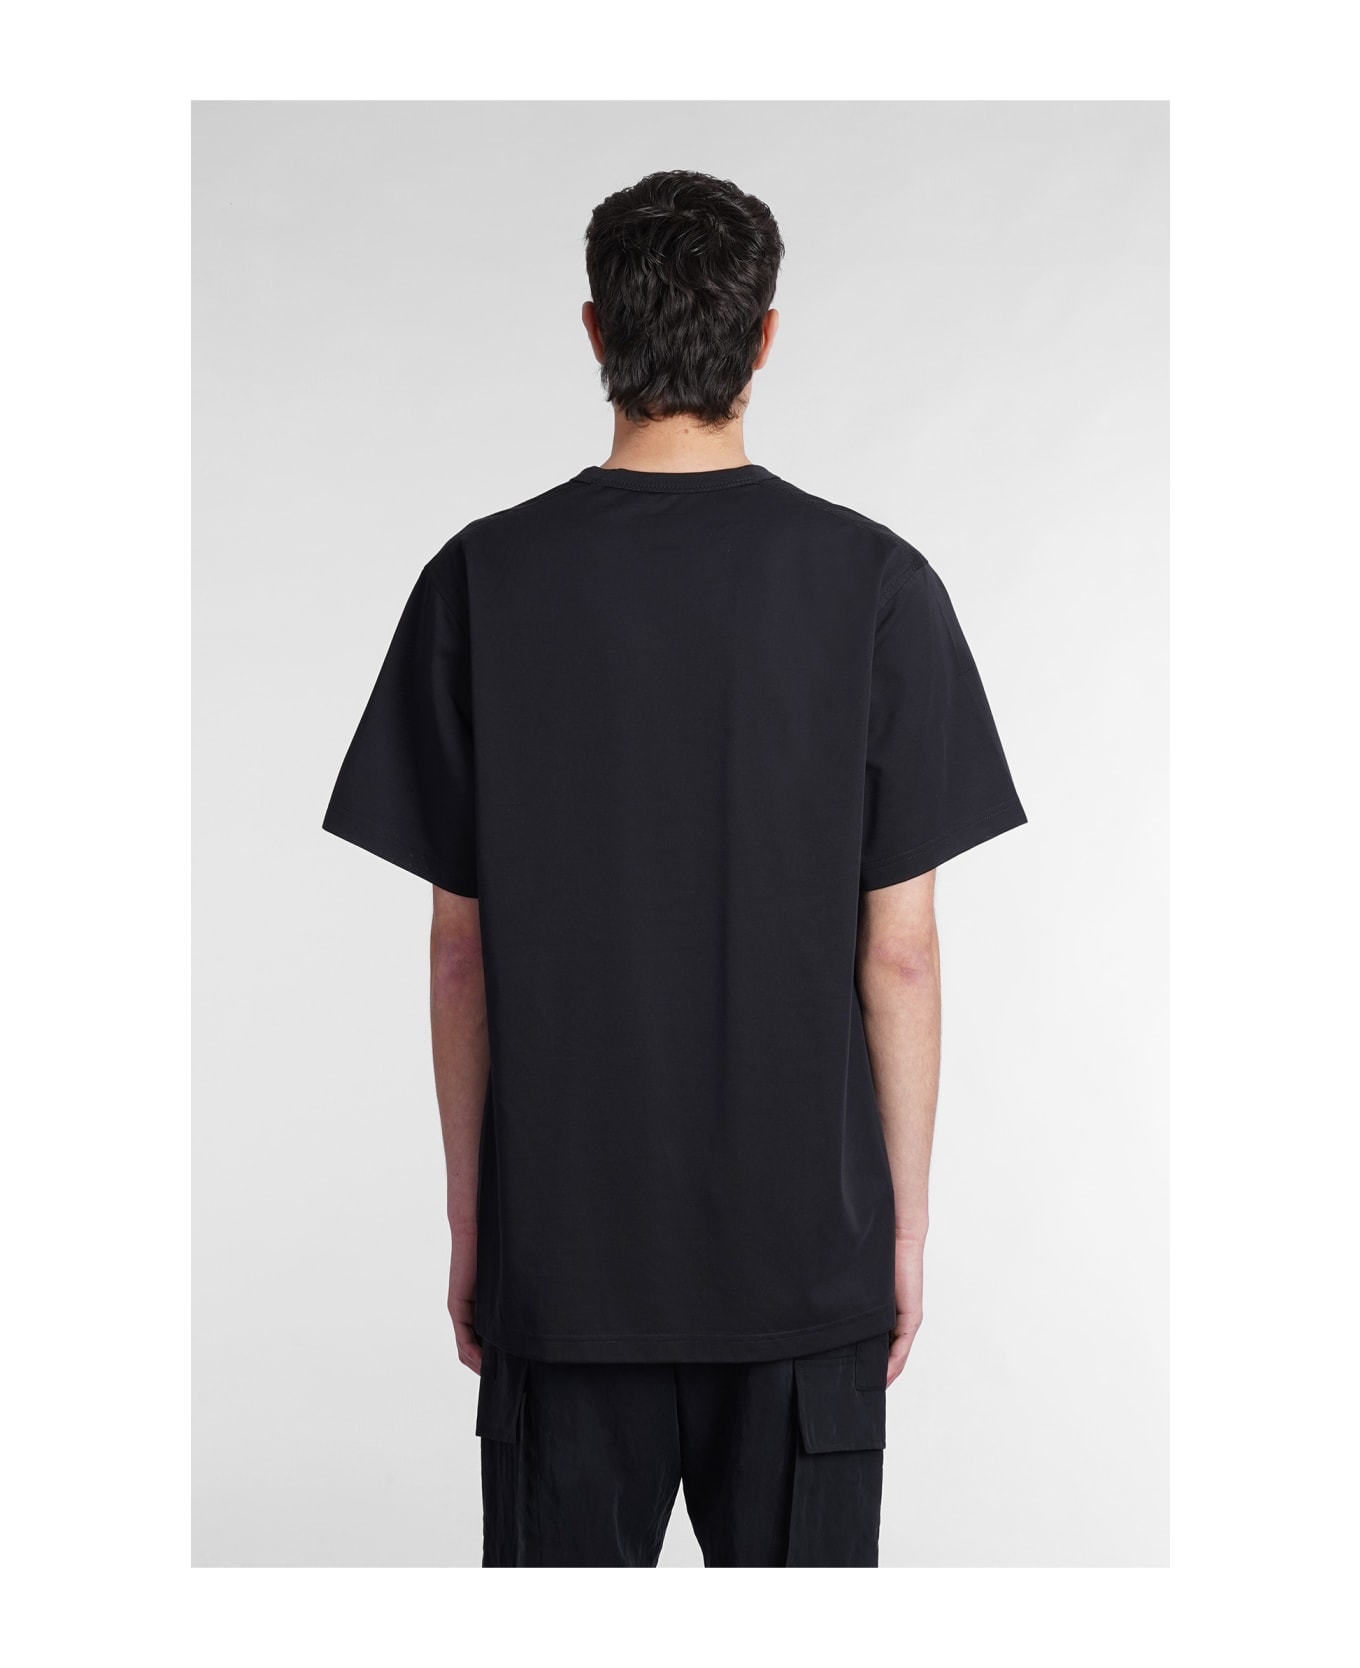 Y-3 T-shirt In Black Cotton - Nero